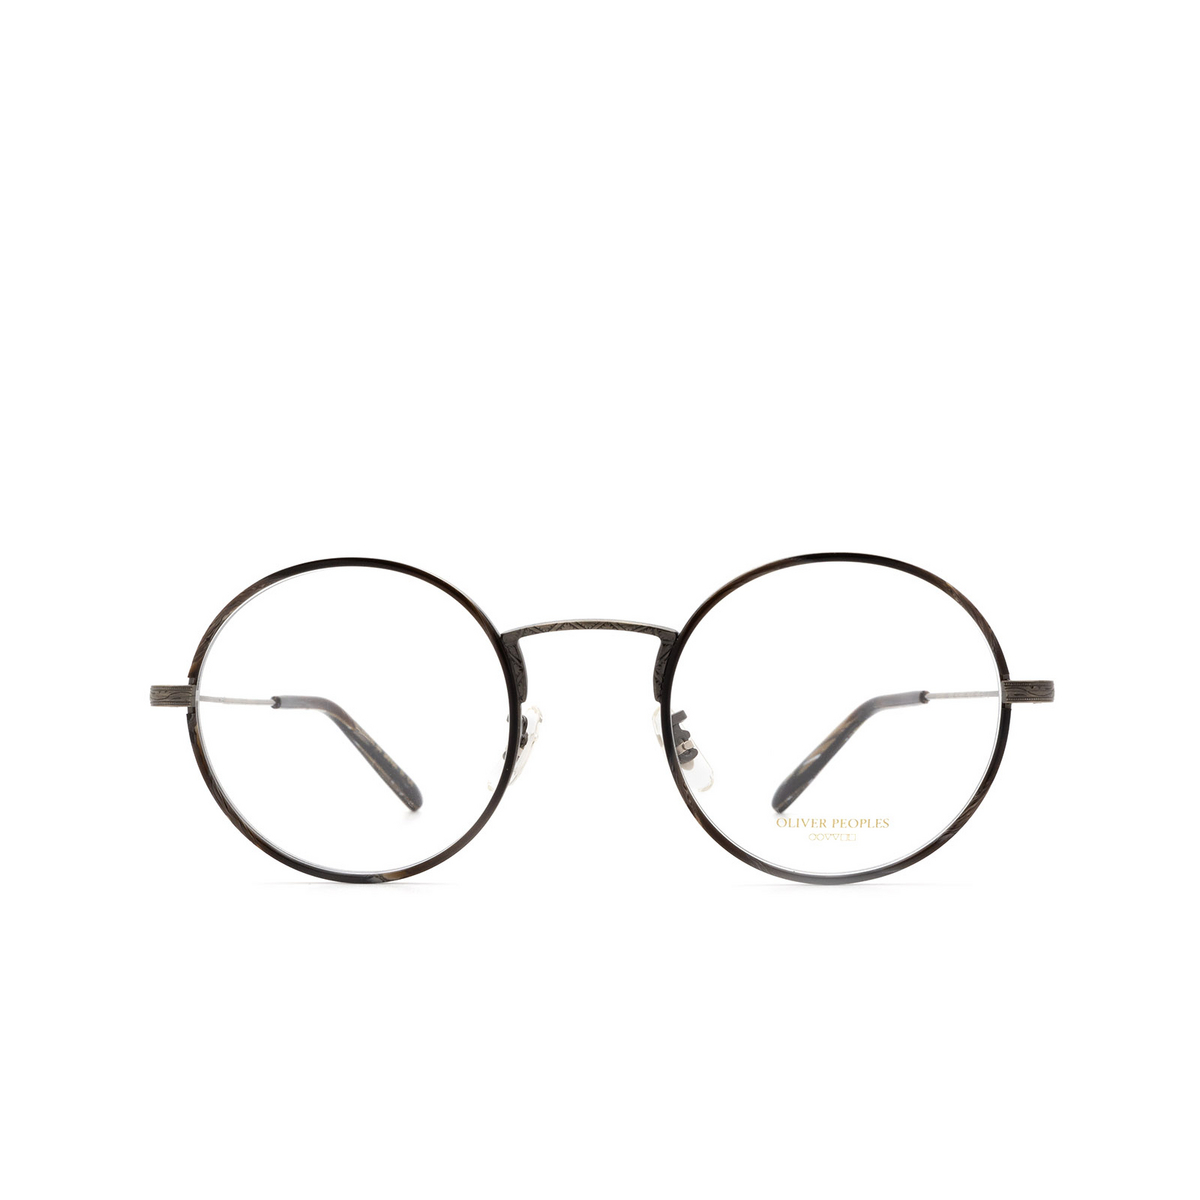 Oliver Peoples® Round Eyeglasses: Ellerby OV1250T color Black Horn / New Antique Pewter 5289 - 1/3.